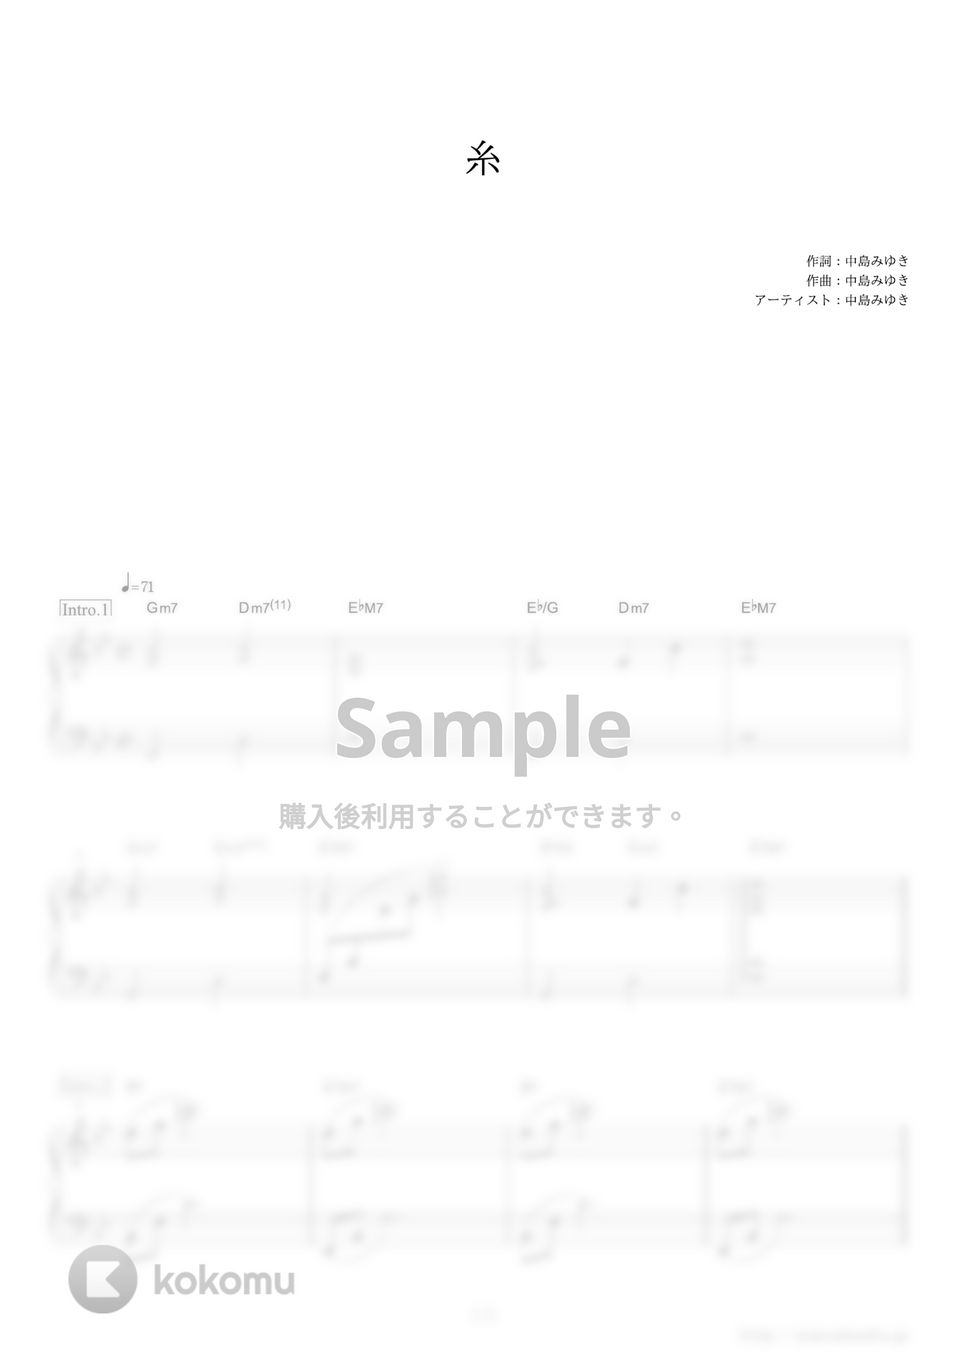 中島みゆき - 糸 (ドラマ『聖者の行進』主題歌) by ピアノの本棚